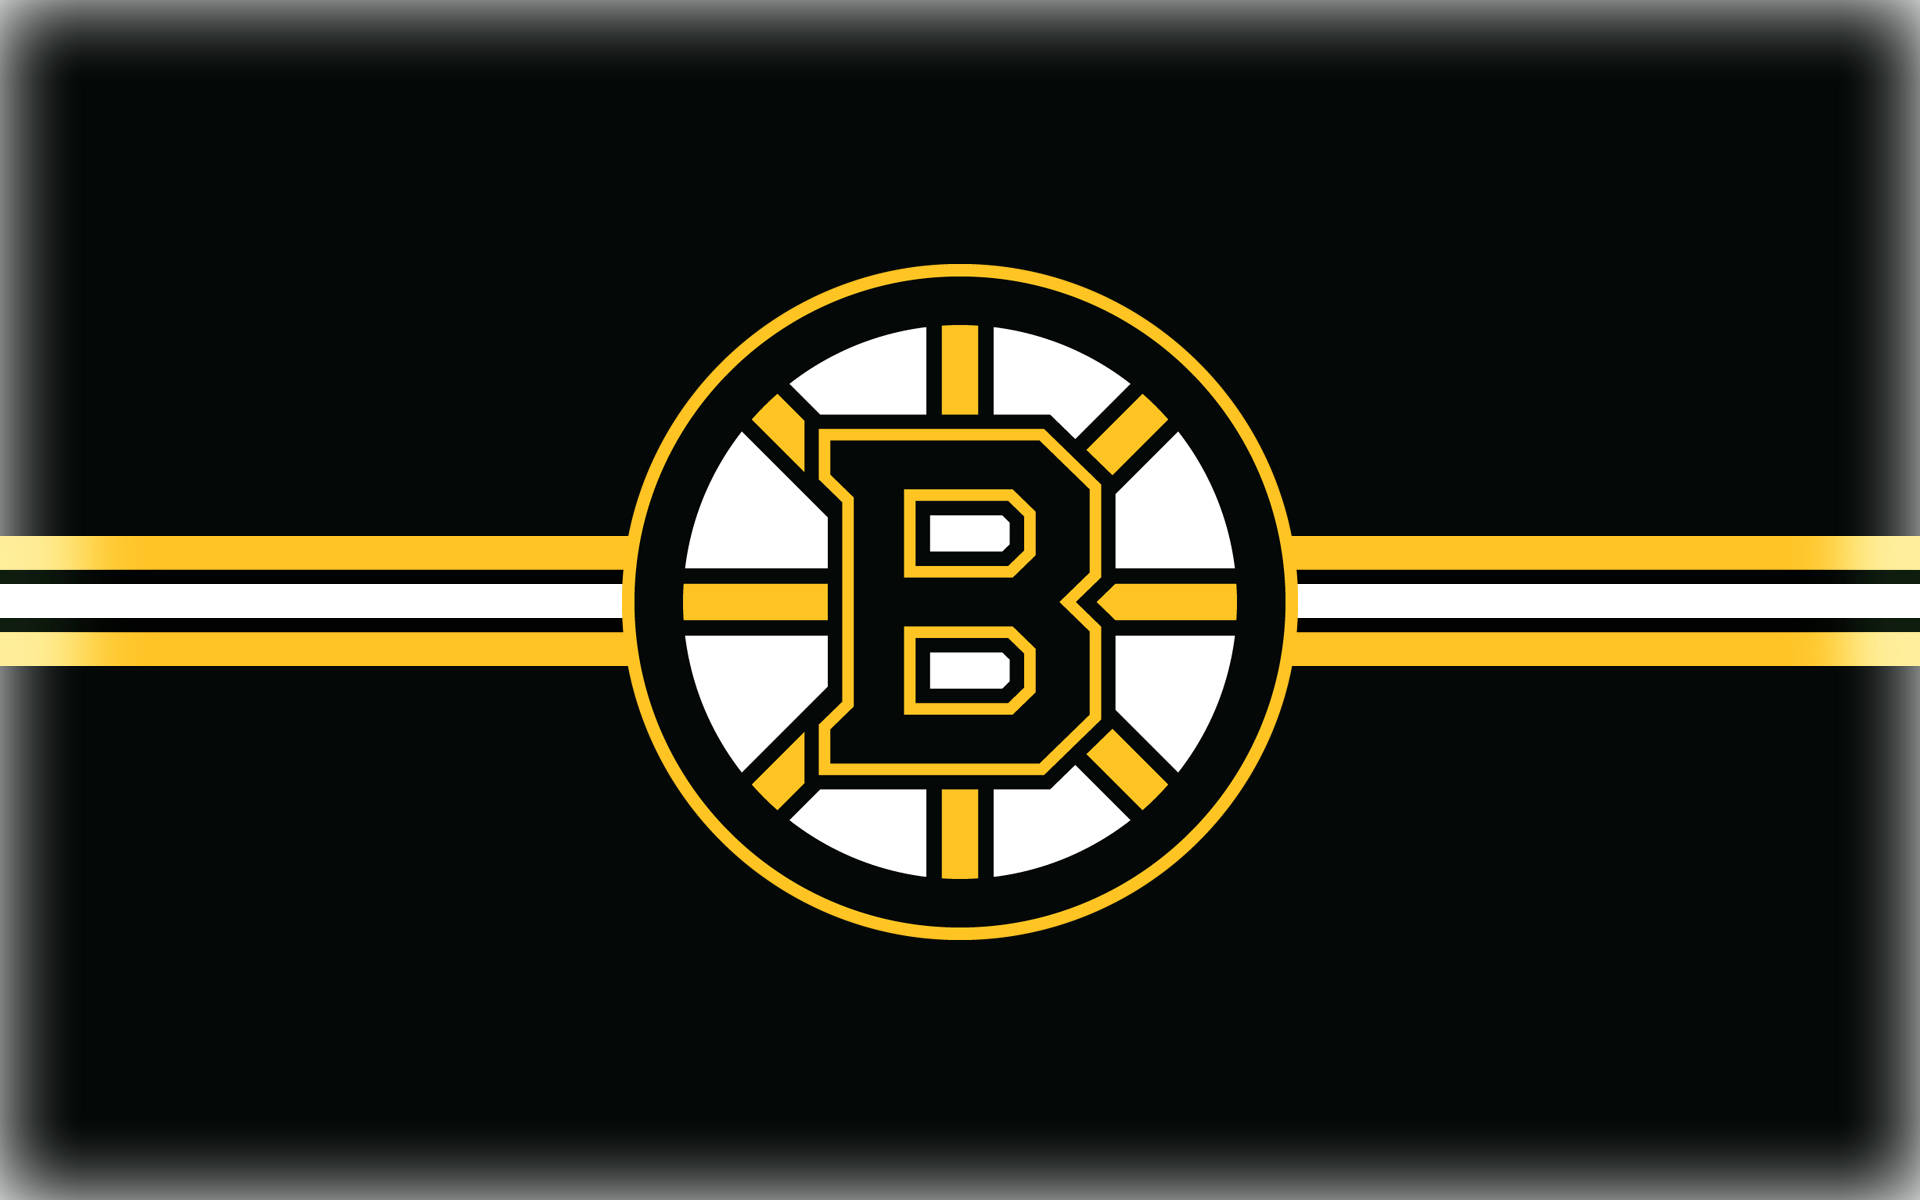 Boston Bruins White Yellow Black Background